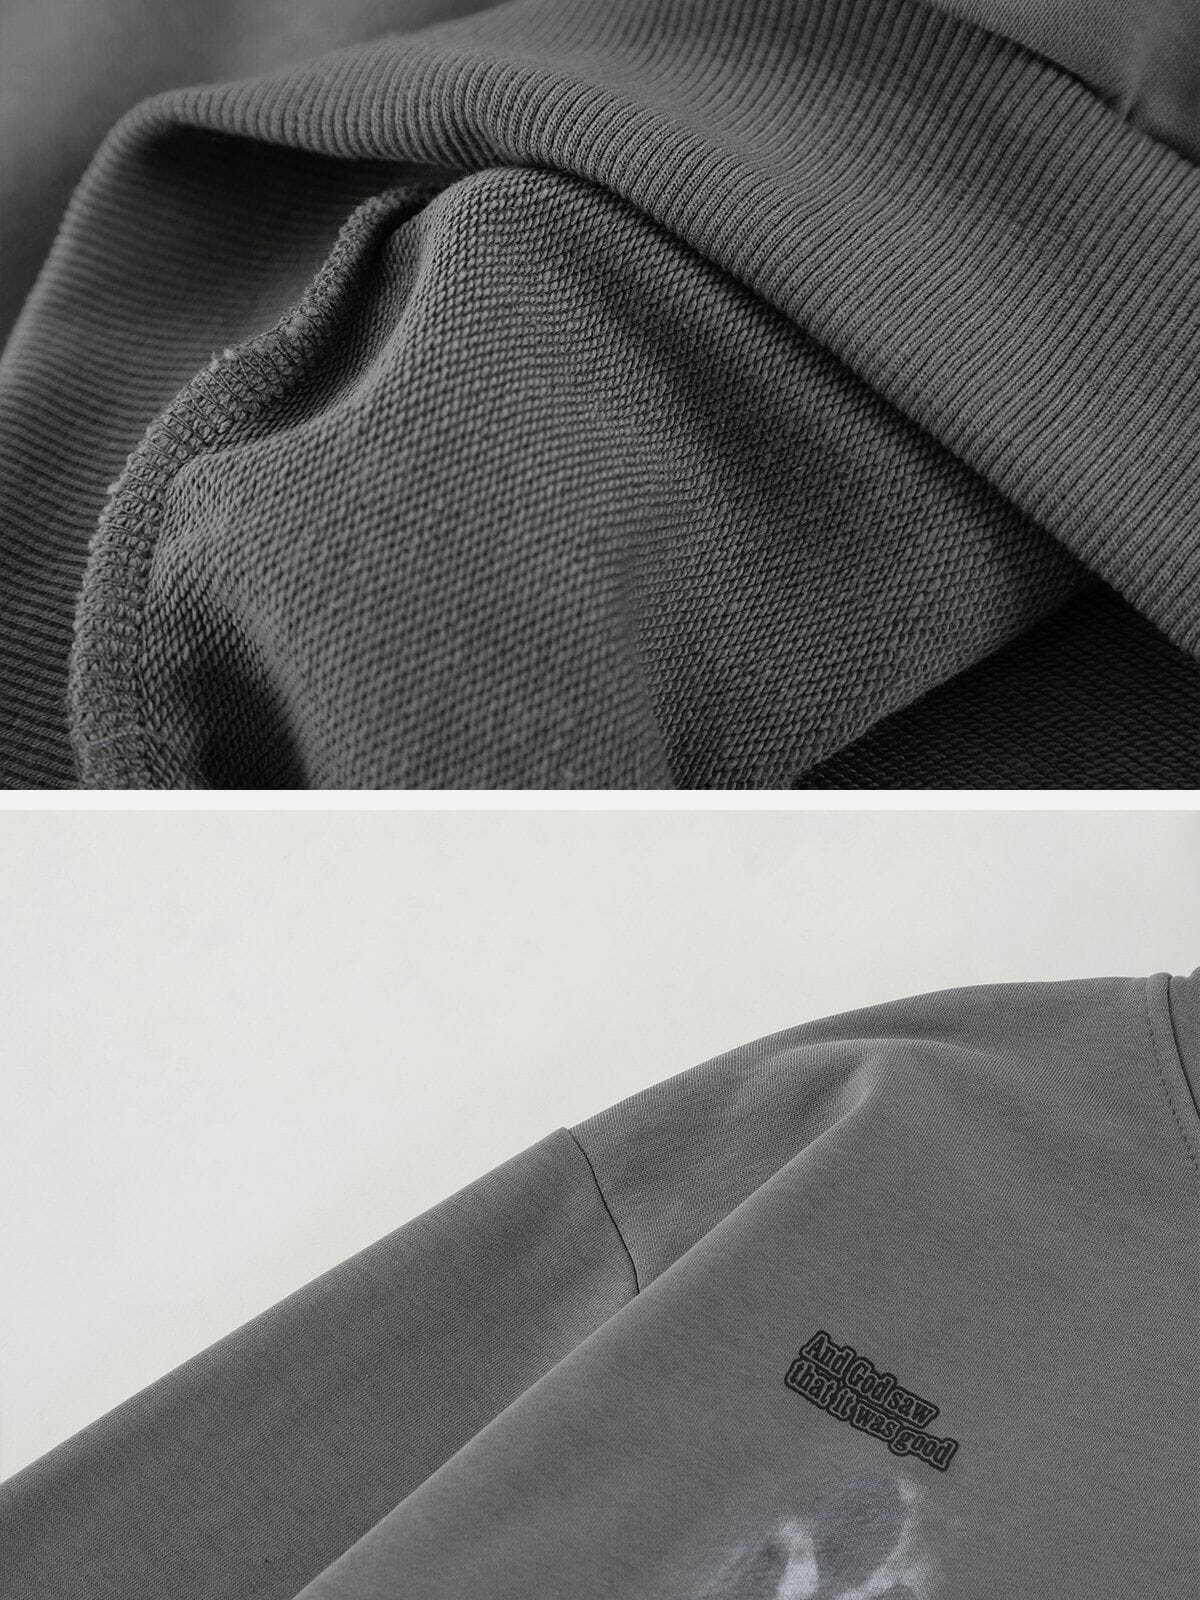 blurry shadow print hoodie edgy & urban streetwear 3179